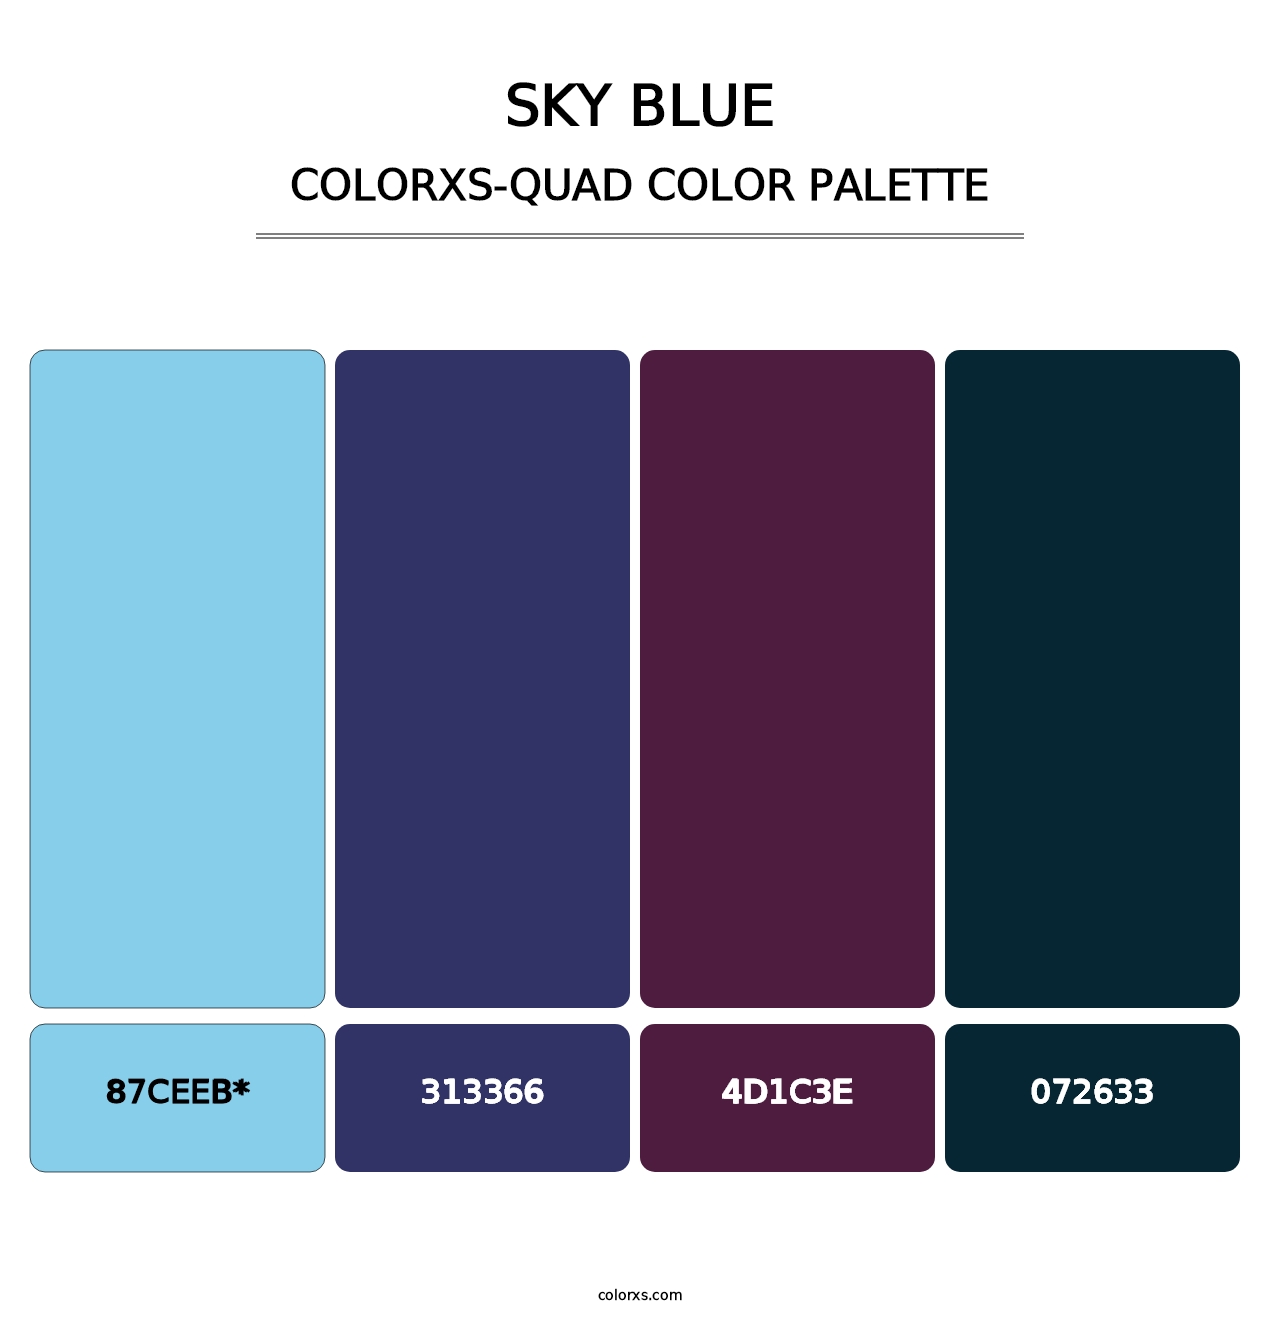 Sky blue - Colorxs Quad Palette